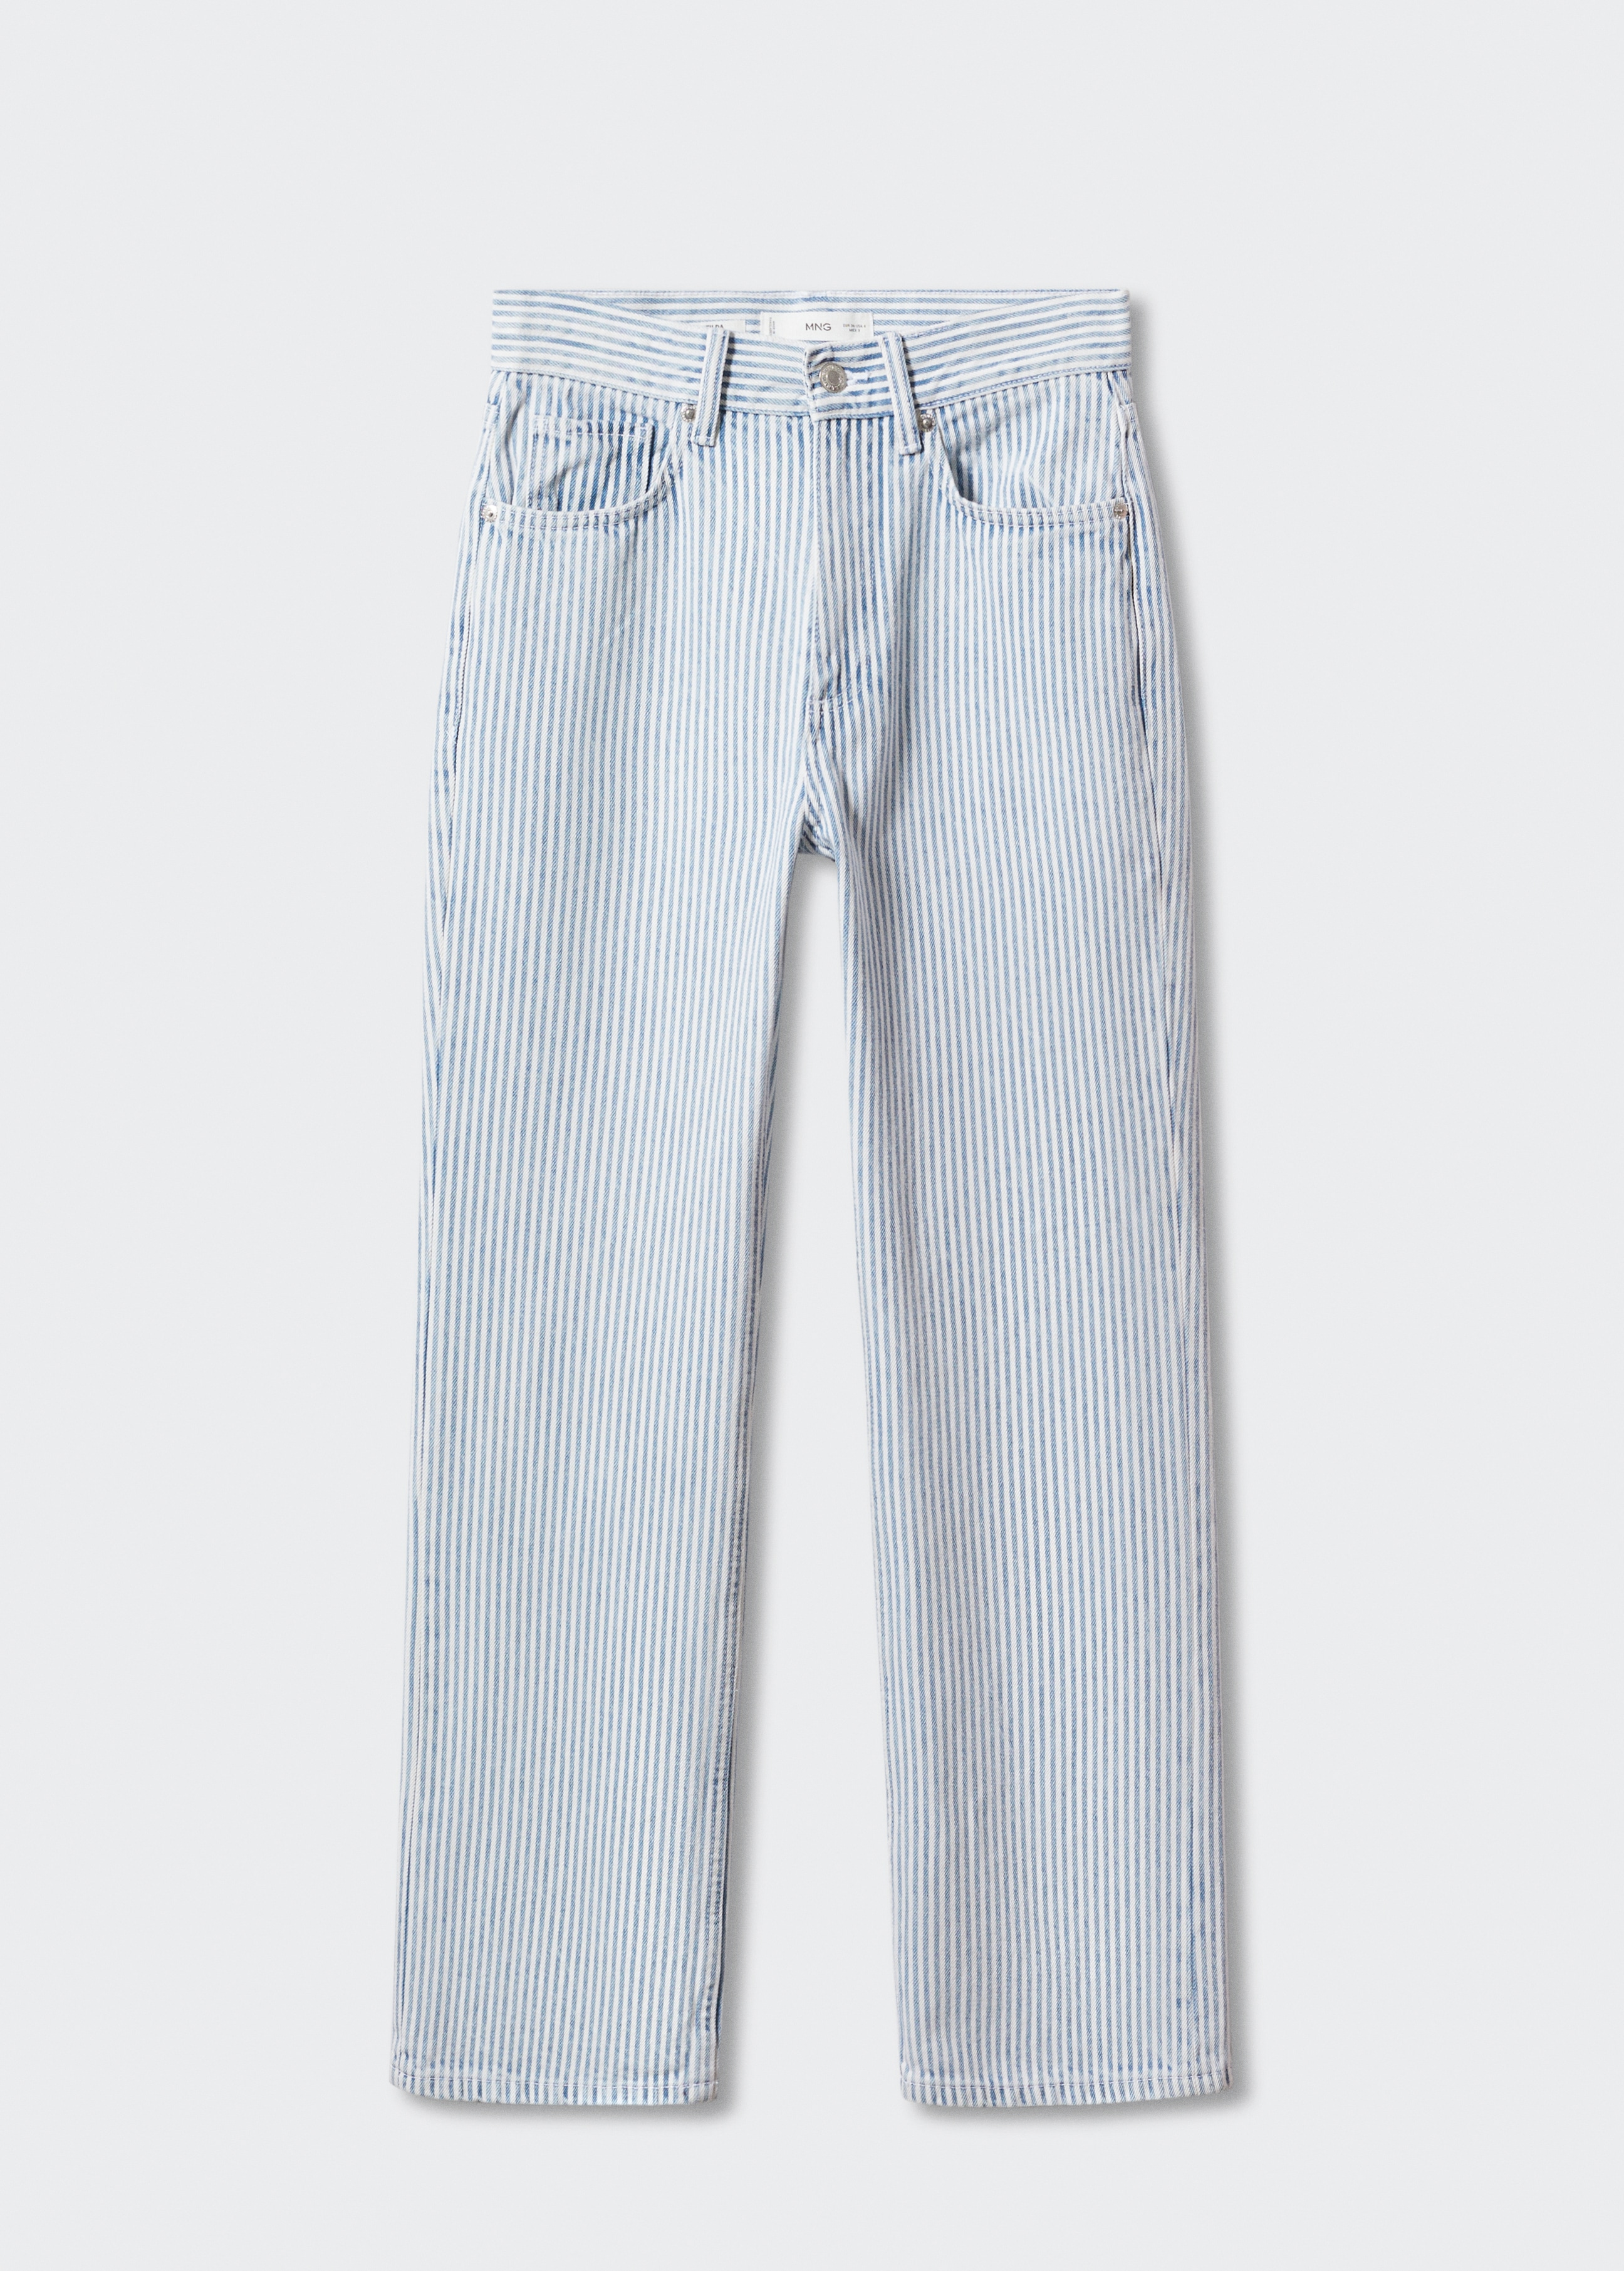 Τζιν παντελόνι ίσιο ριγέ - Προϊόν χωρίς μοντέλο